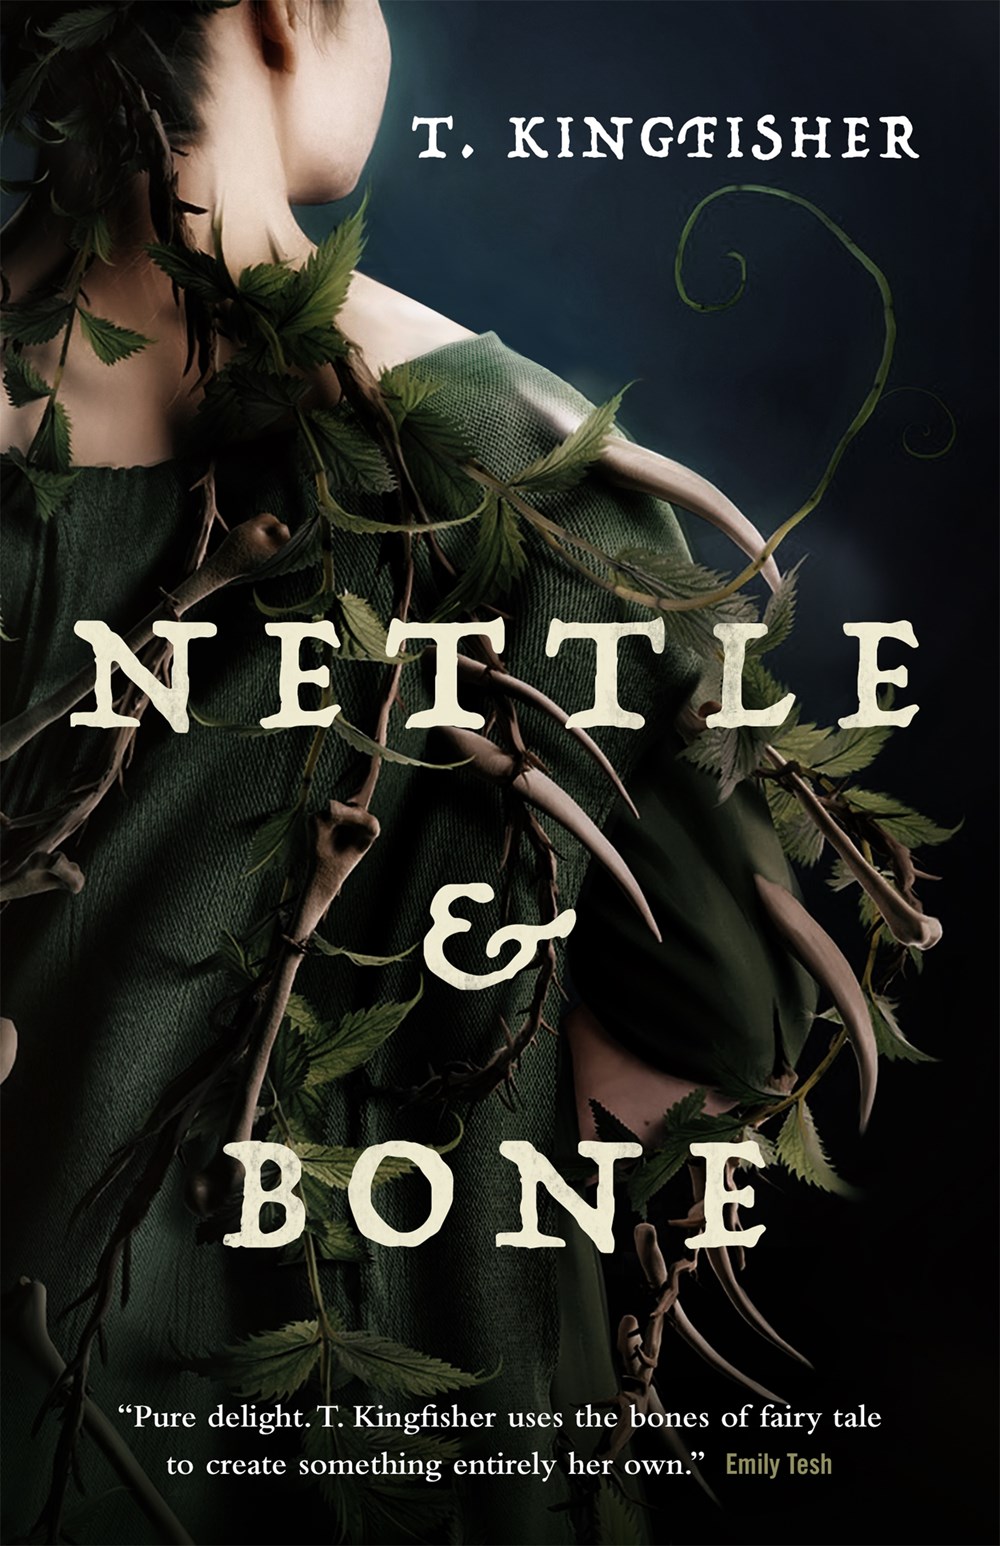 Image for "Nettle & Bone"